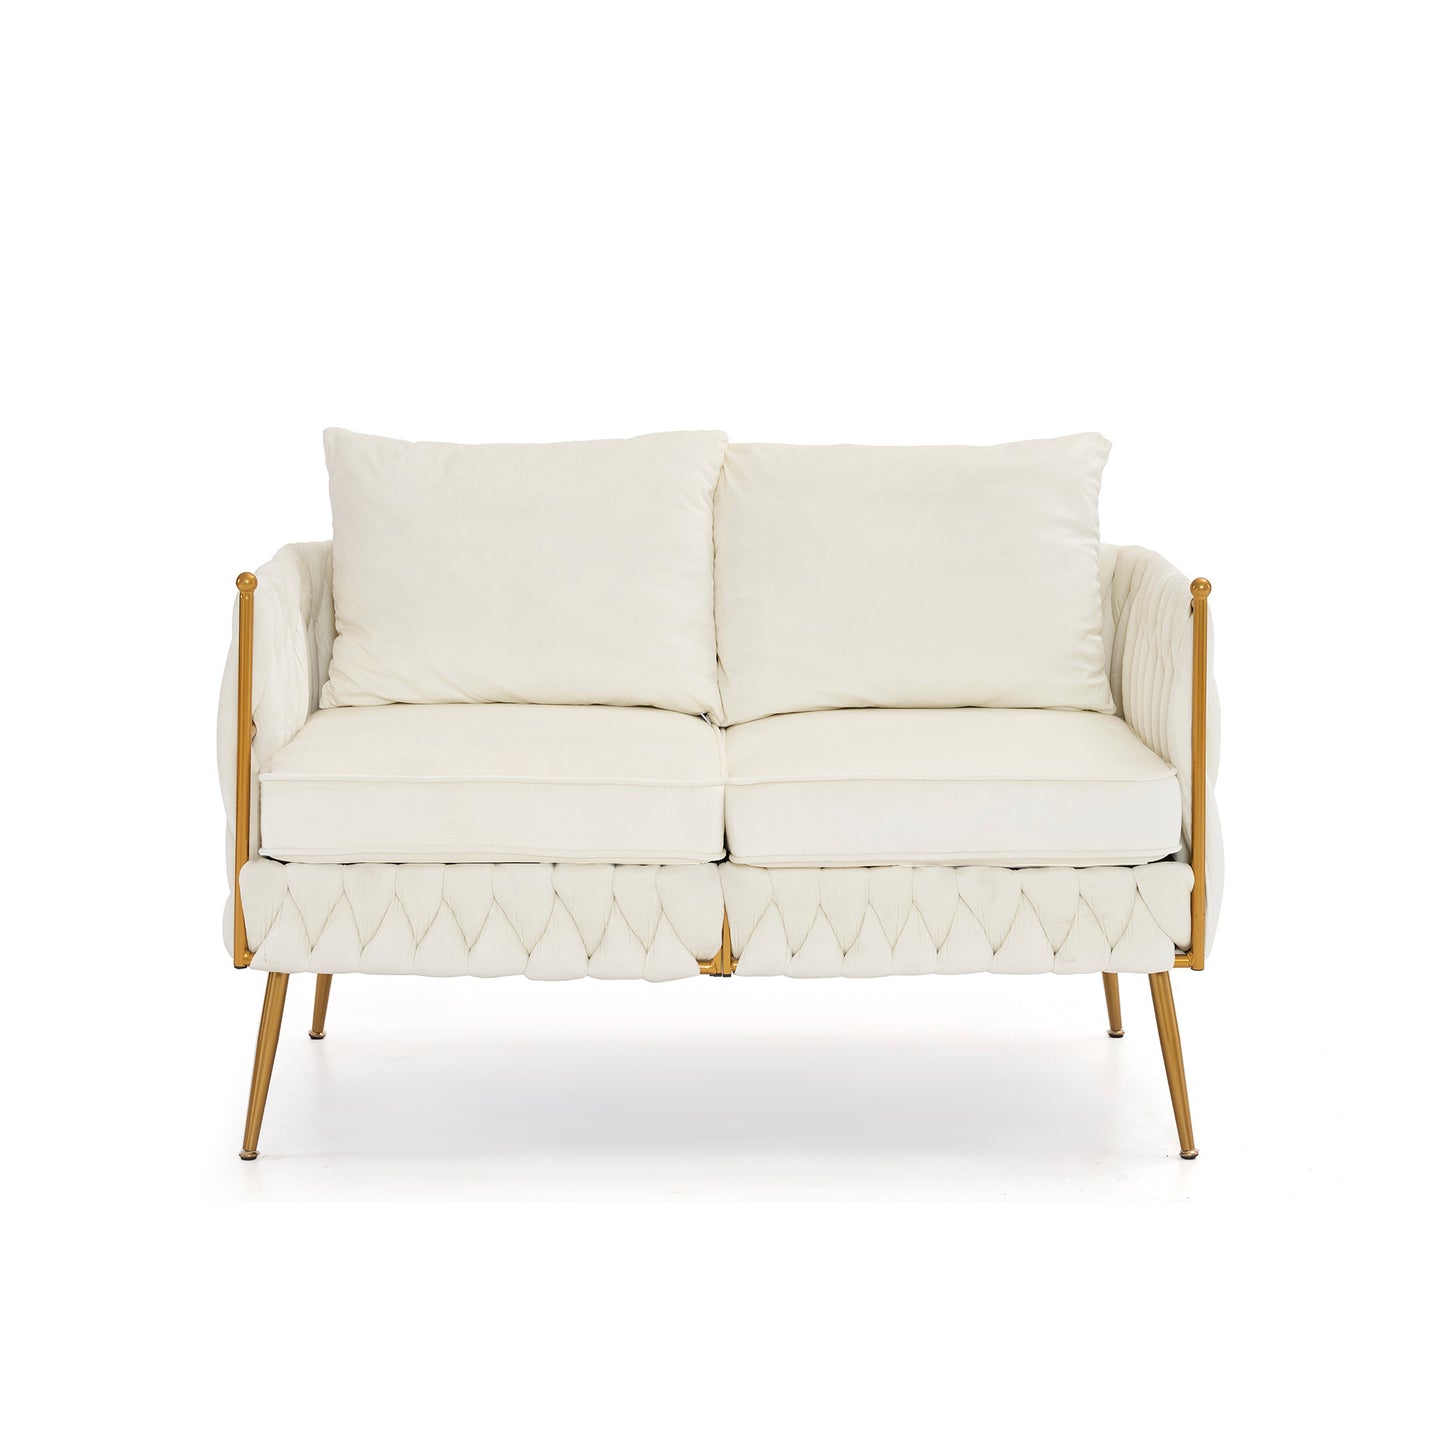 3 Piece Modern Velvet Upholstered Living Room Set with 3-Seater Sofa and 2 Loveseats, Handmade Woven Tufted Back and Arms, Golden Metal Legs,Cream White Velvet